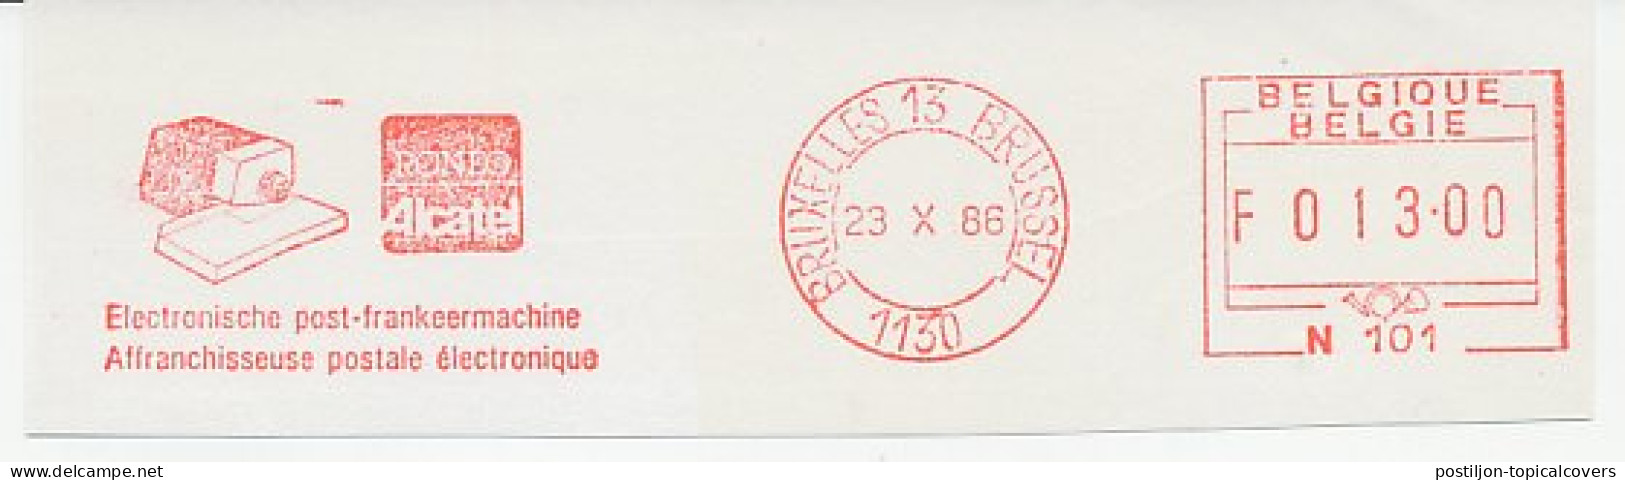 Meter Cut Belgium 1986 Roneo Alcatel - Machine Labels [ATM]